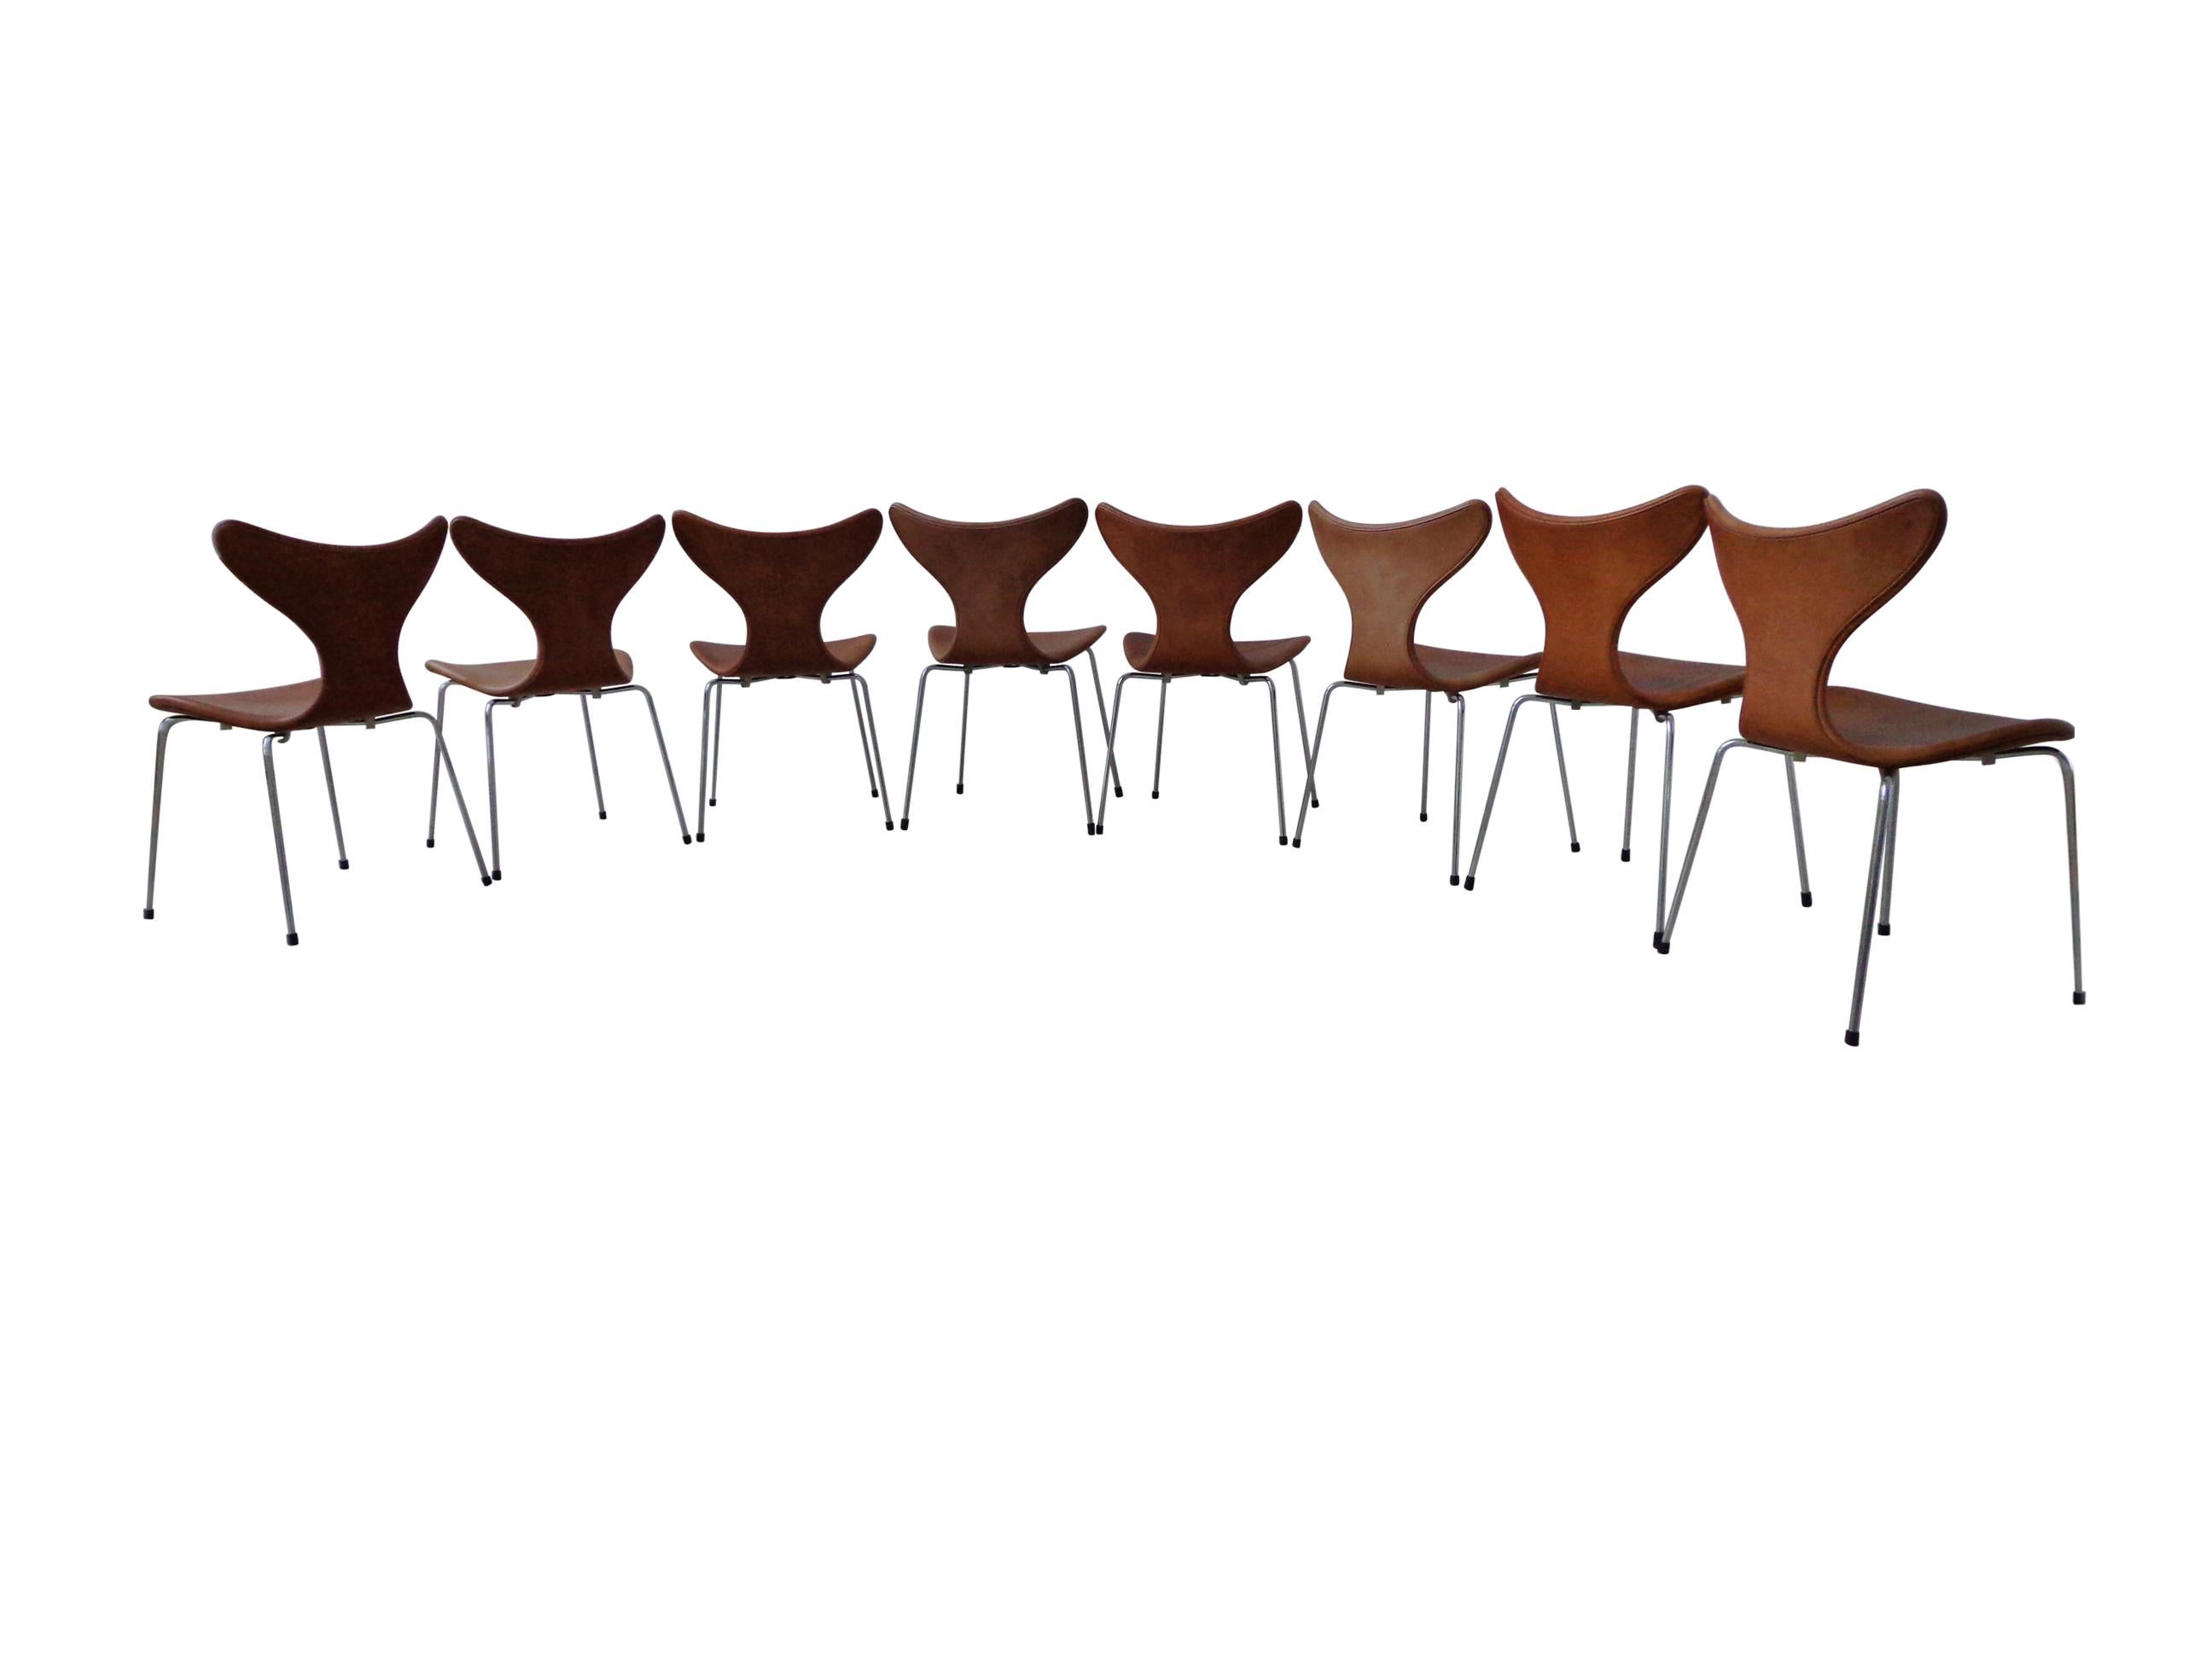 Acier Chaises de salle à manger Arne Jacobsen en cuir cognac, modèle Lily, Fritz Hansen Danemark, années 1970